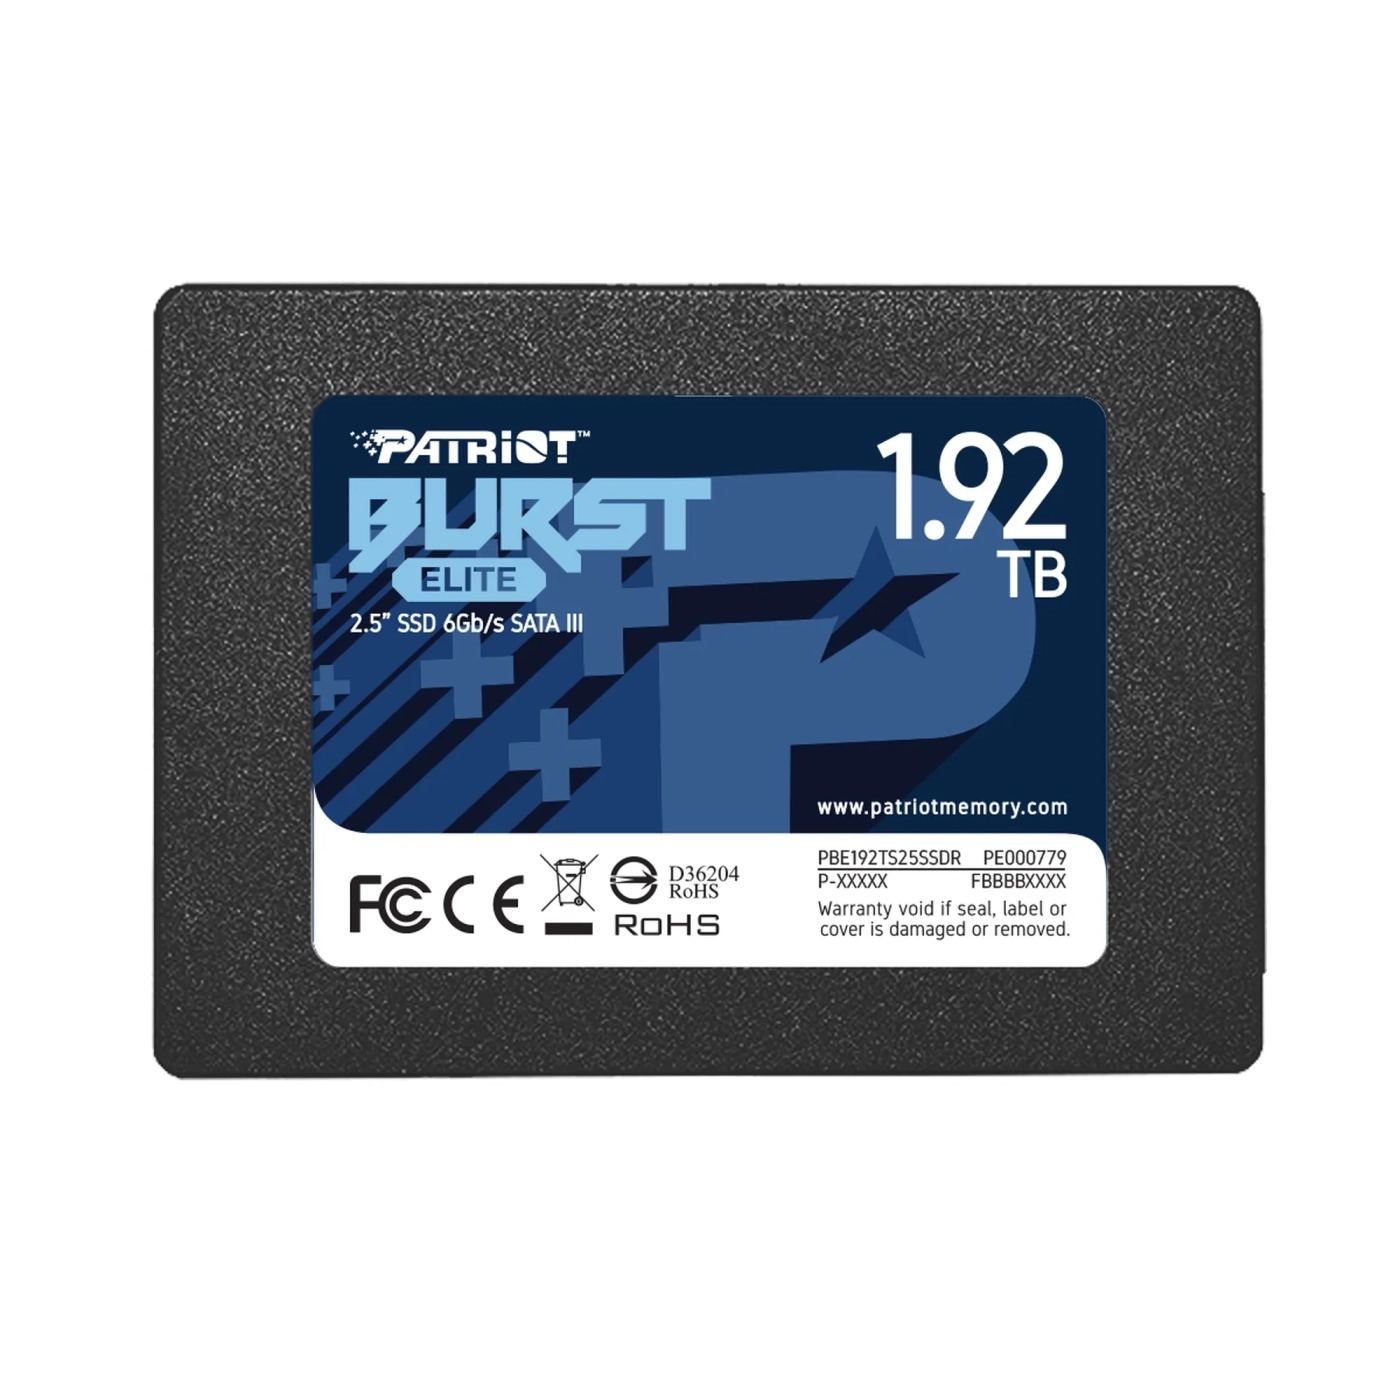 Купить SSD диск Patriot Burst Elite 1.92TB 2.5" SATA (PBE192TS25SSDR) - фото 1